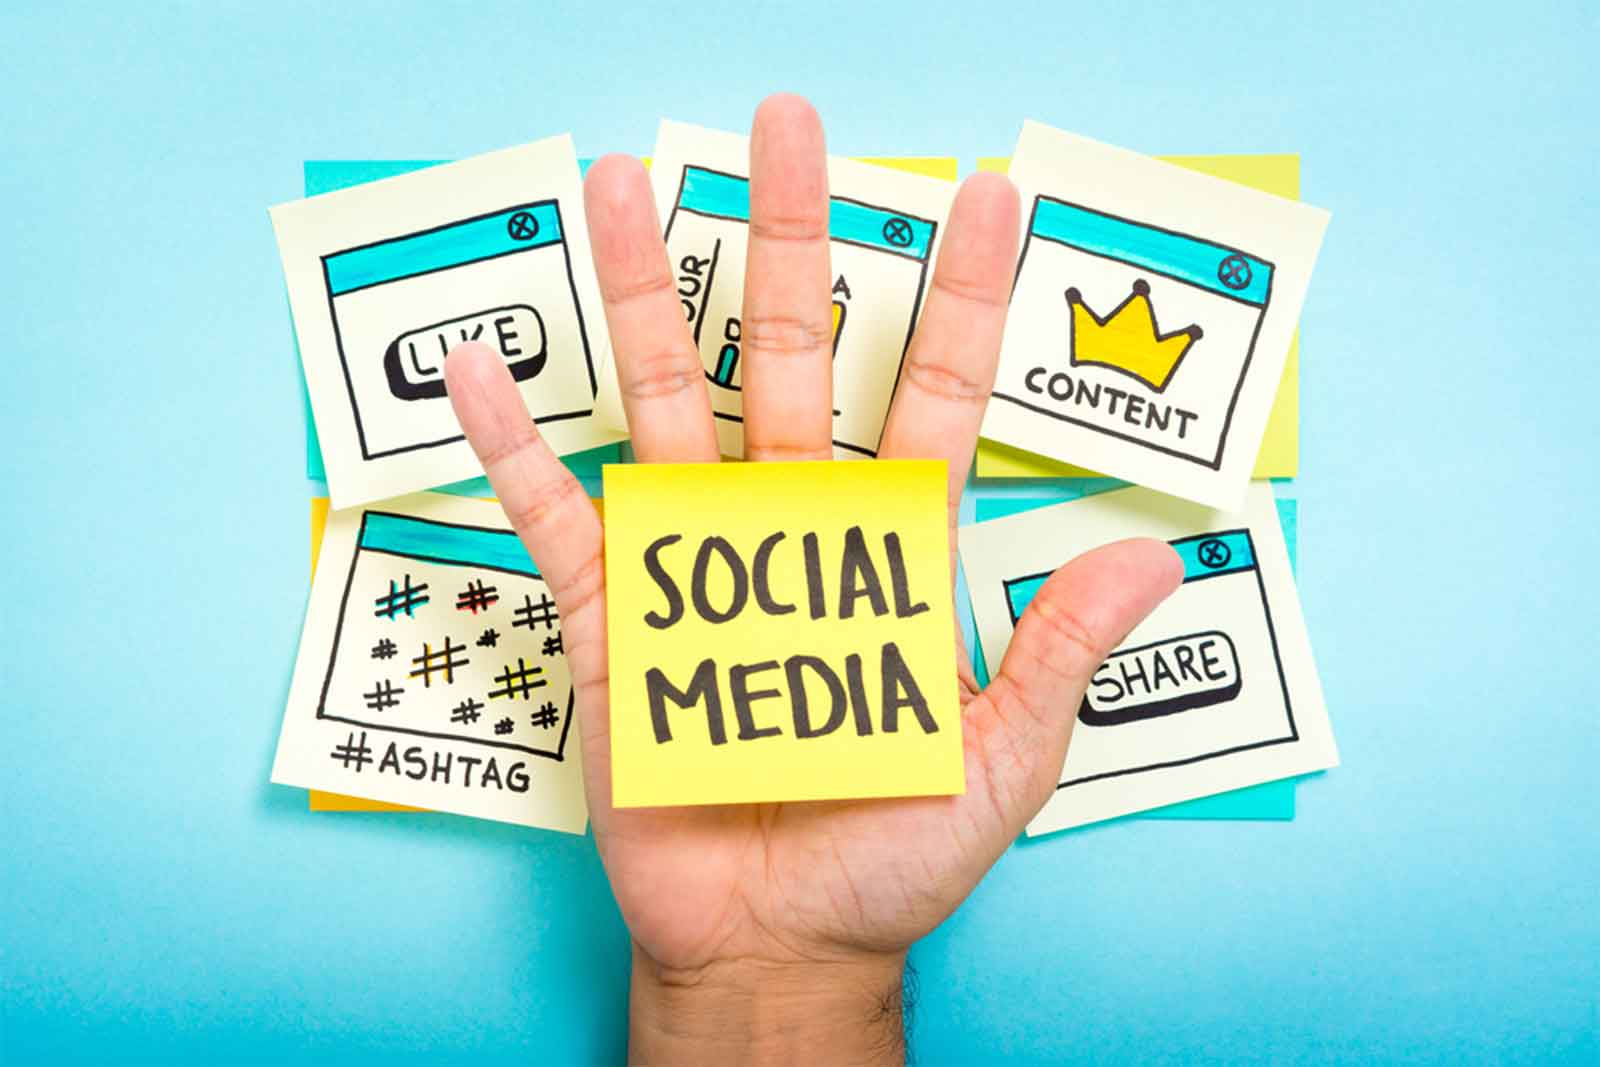 Social Media For Business